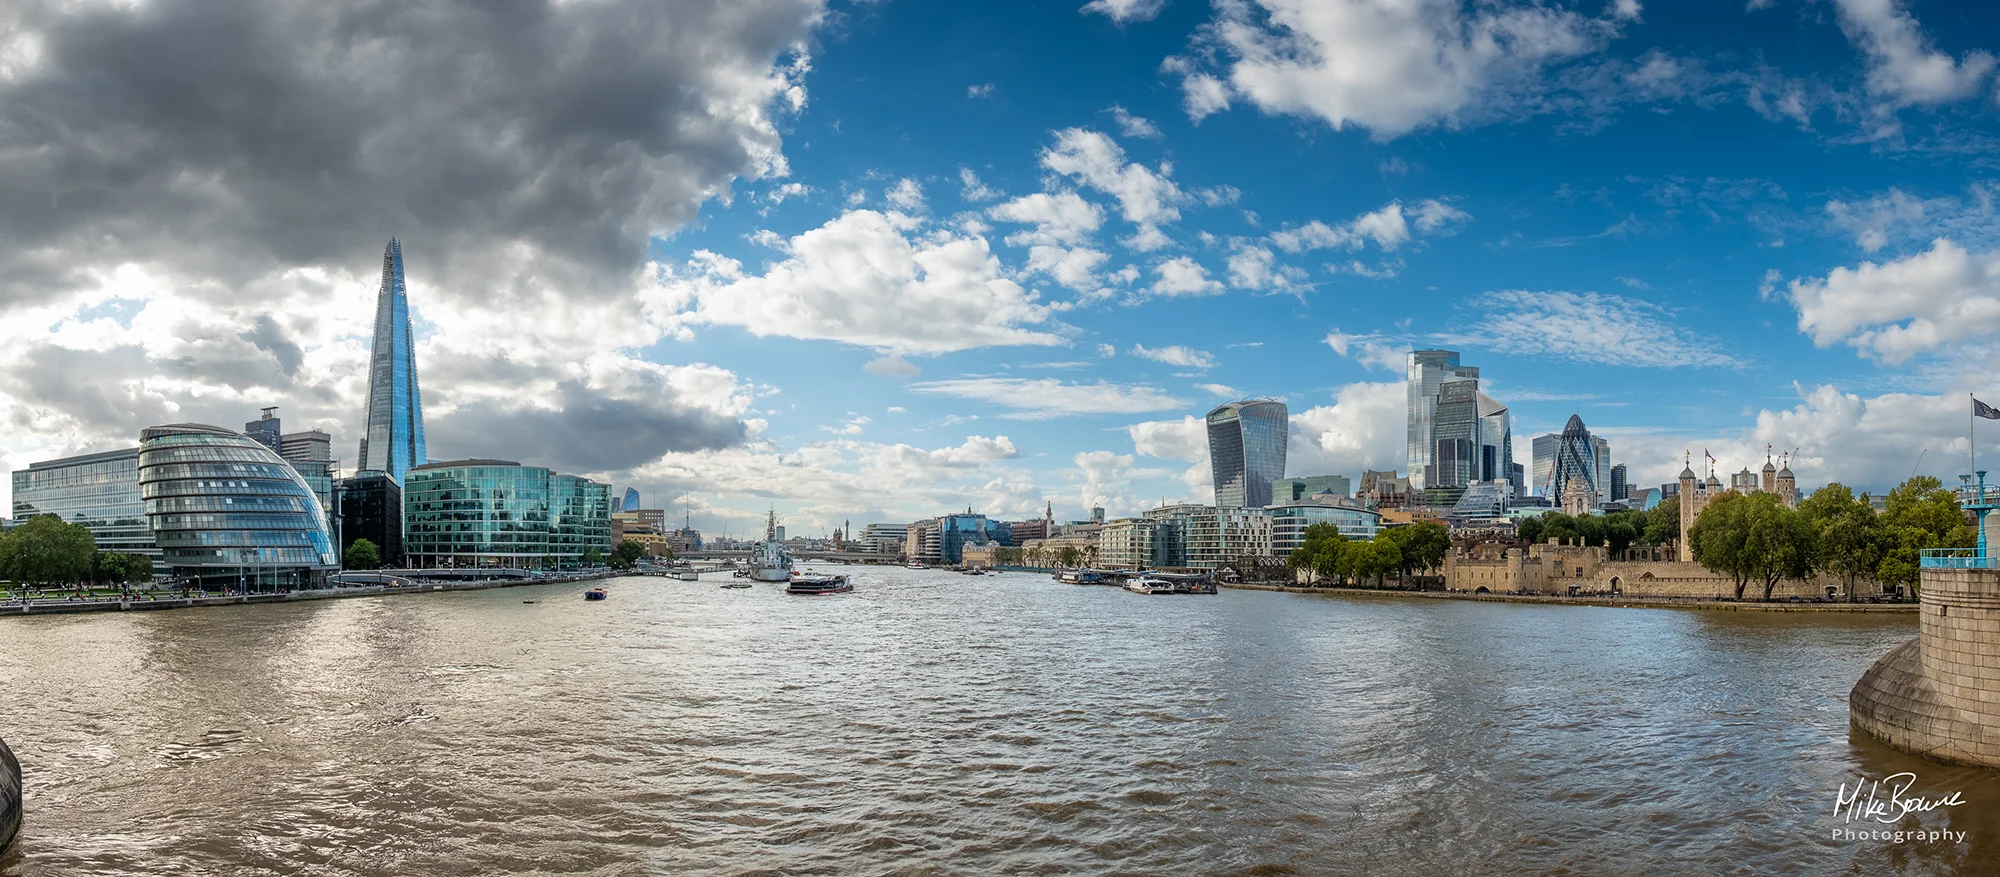 London skyline across the Thames River